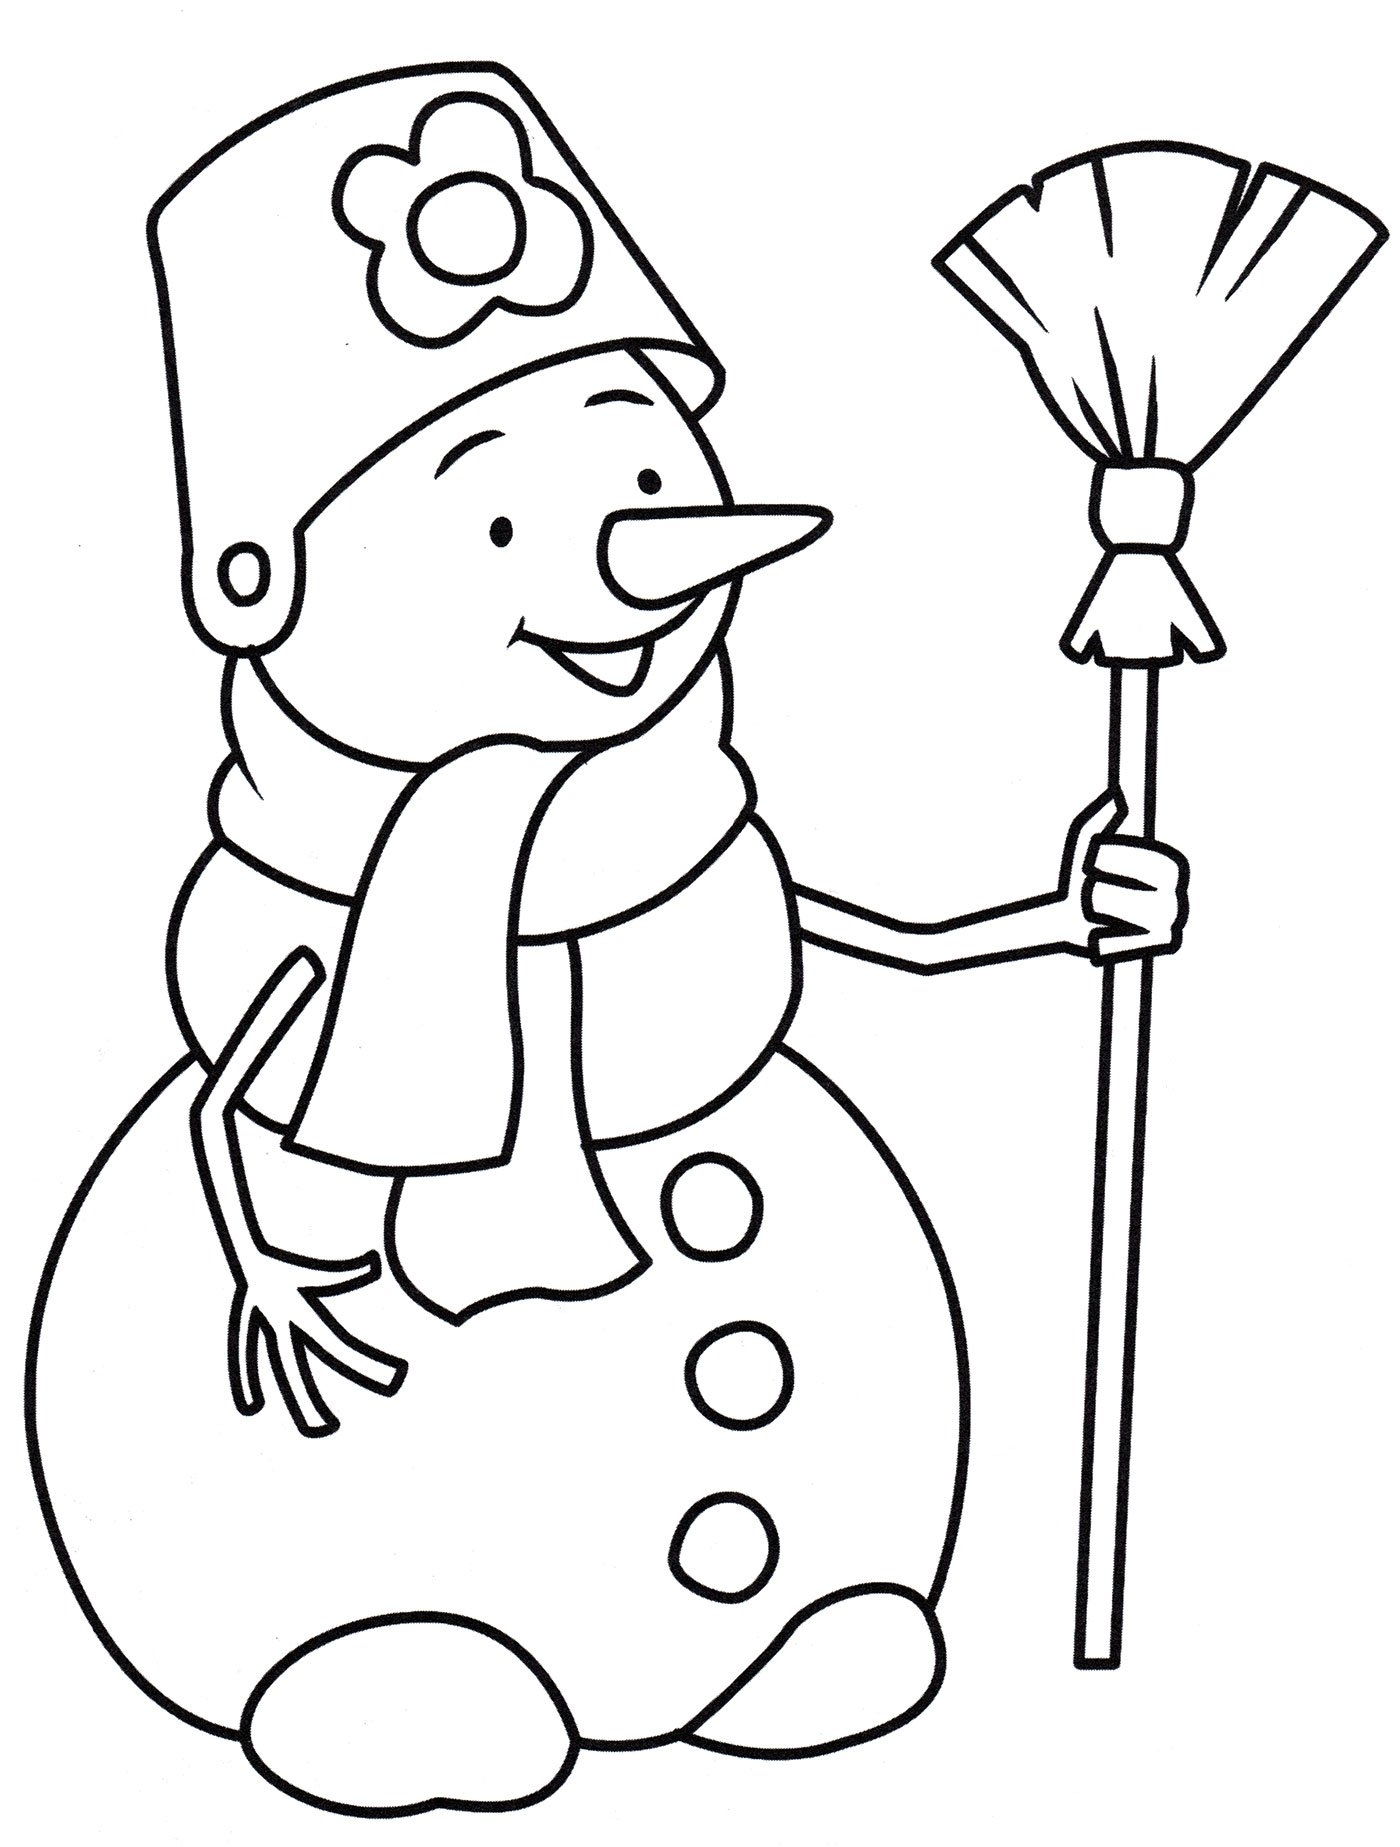 Раскраска снеговик Изображения – скачать бесплатно на Freepik